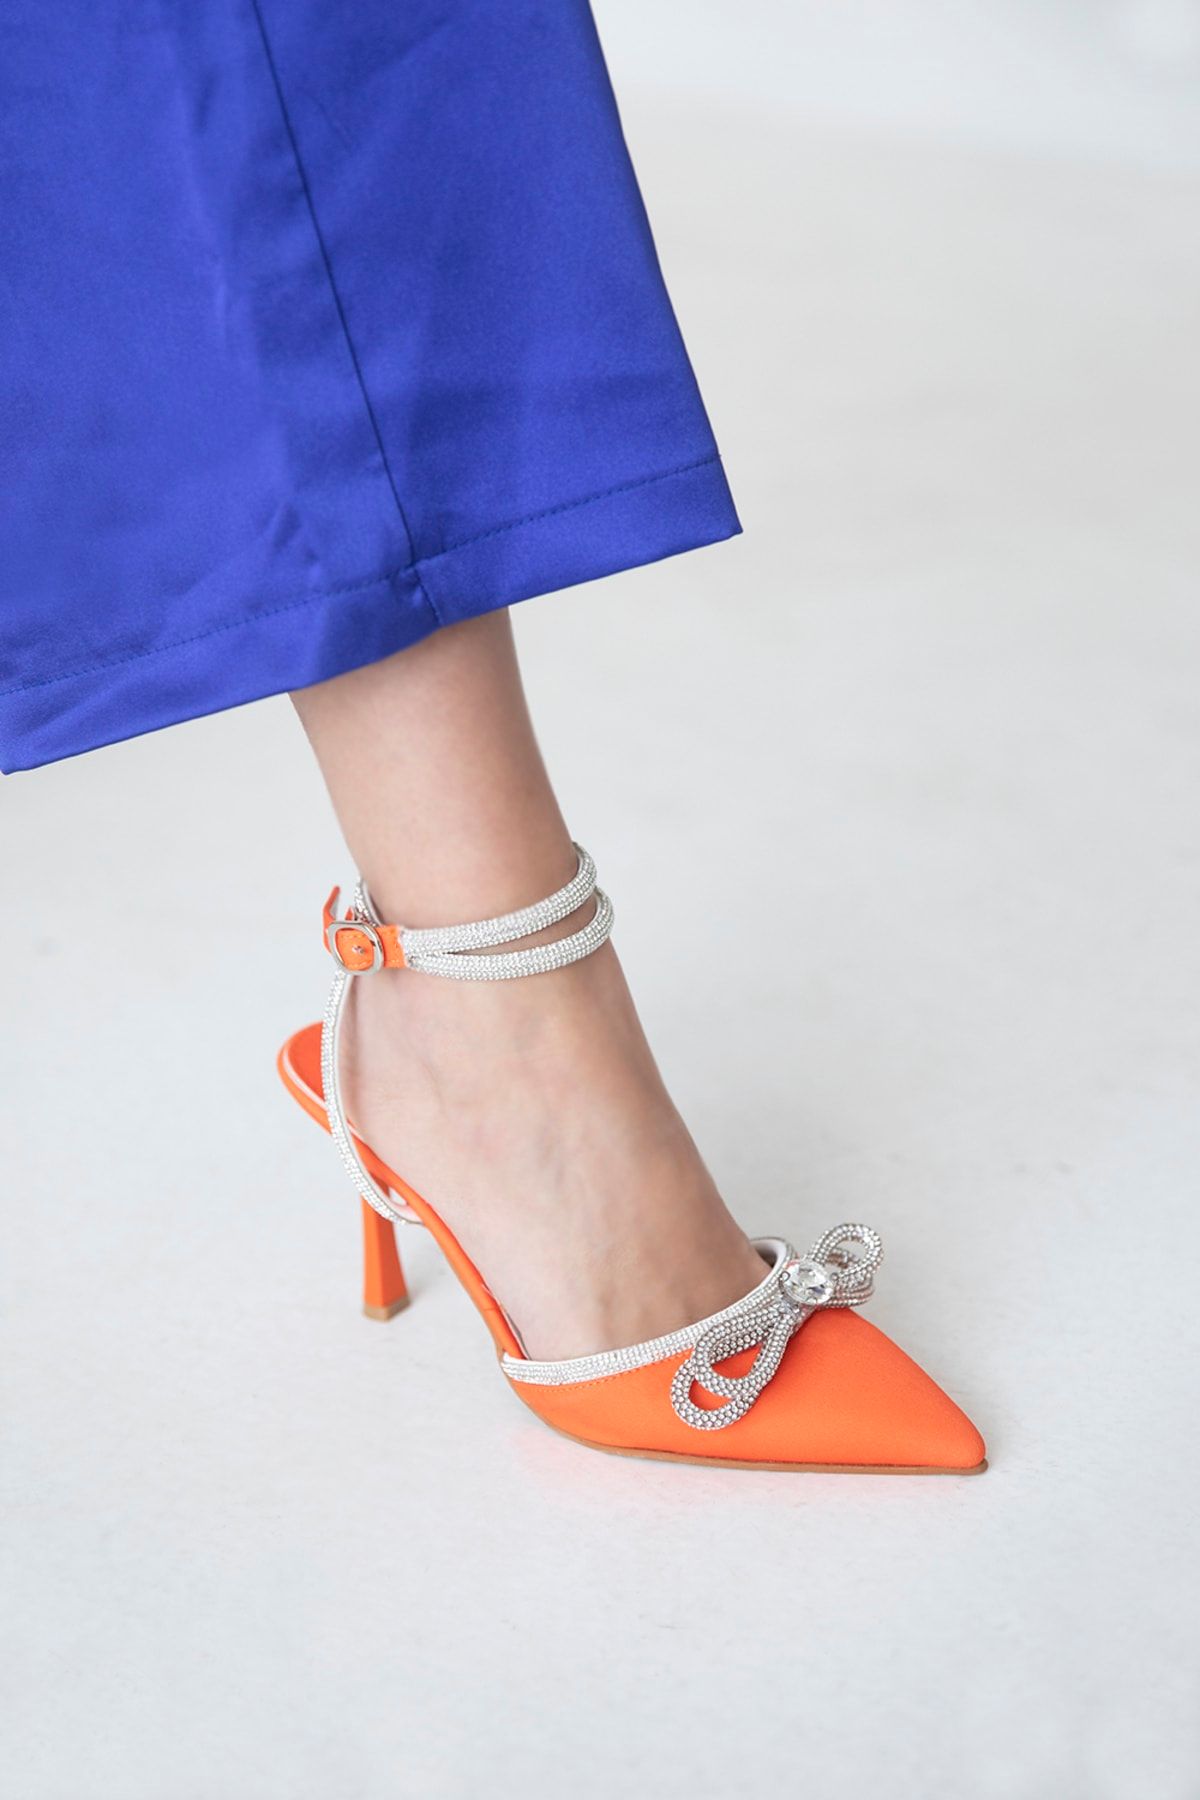 Blue Suede Heels Ankle Strap | Blue Heels Open Toe Ankle Strap - Stiletto  Heel - Aliexpress